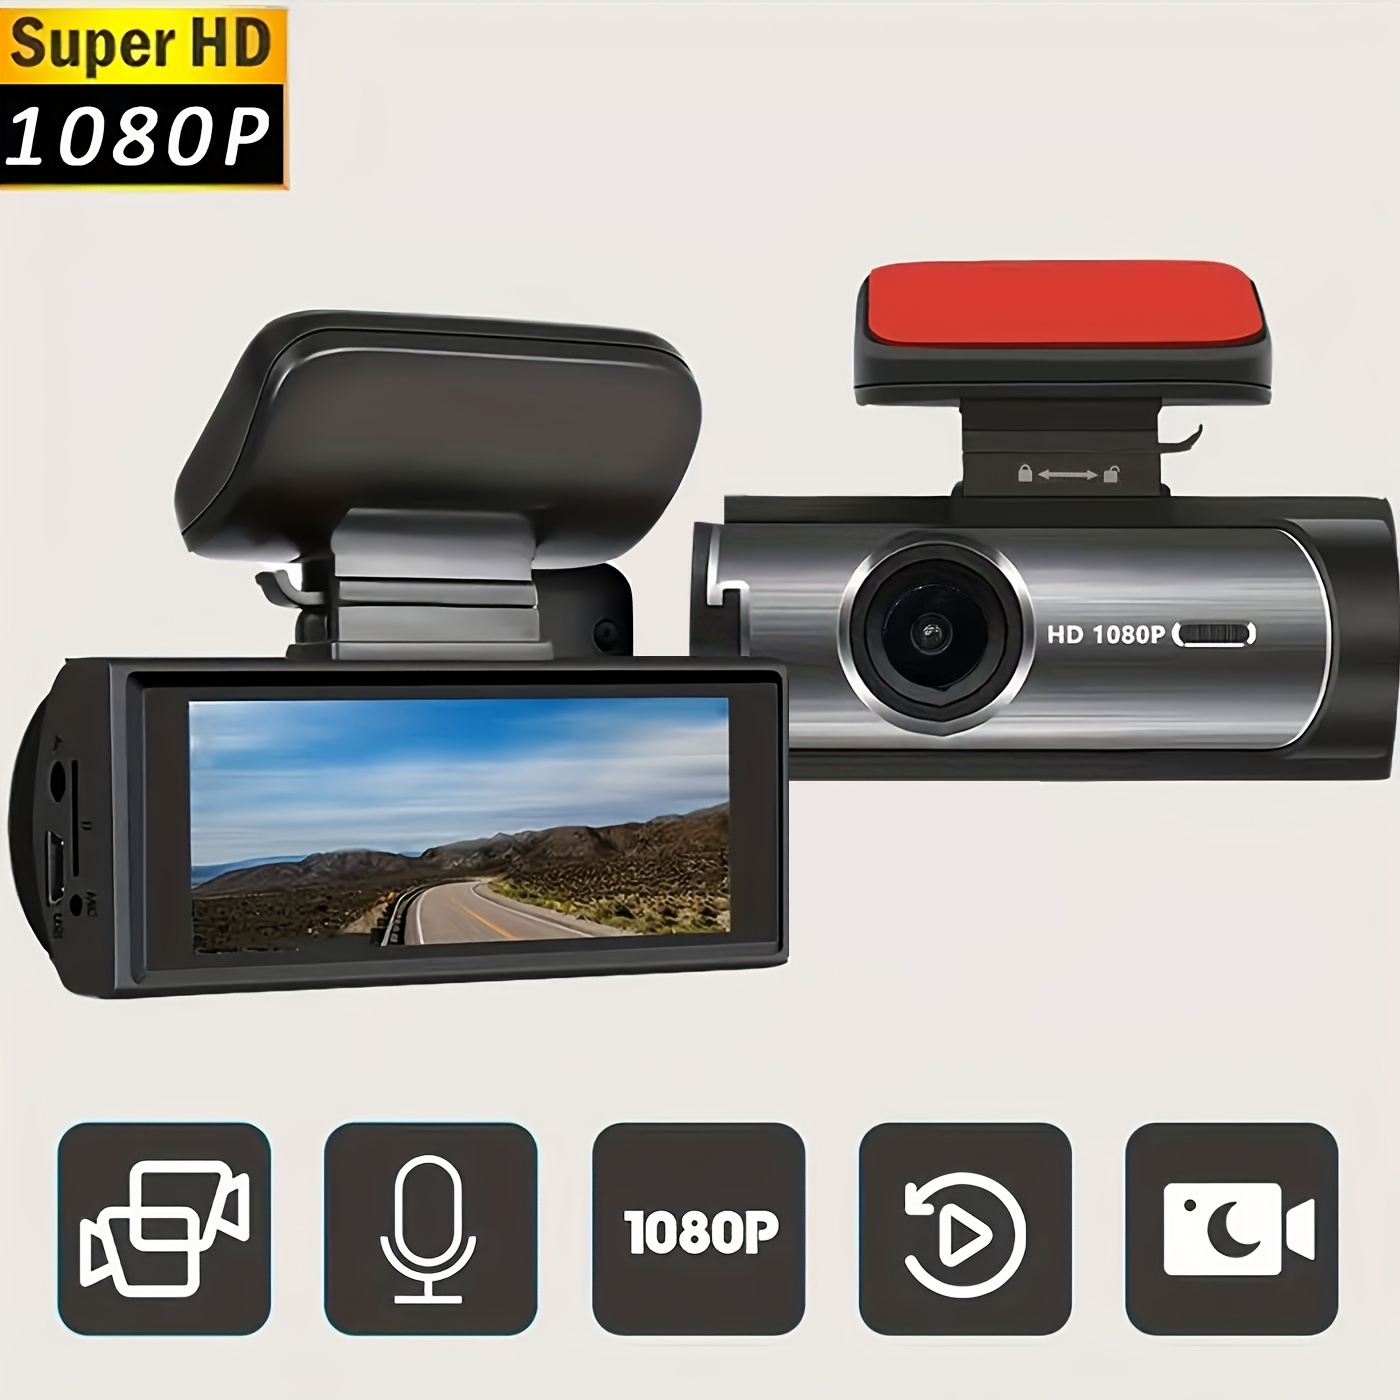 Double Caméra de Tableau de Bord pour Voiture 1080 – Grandado